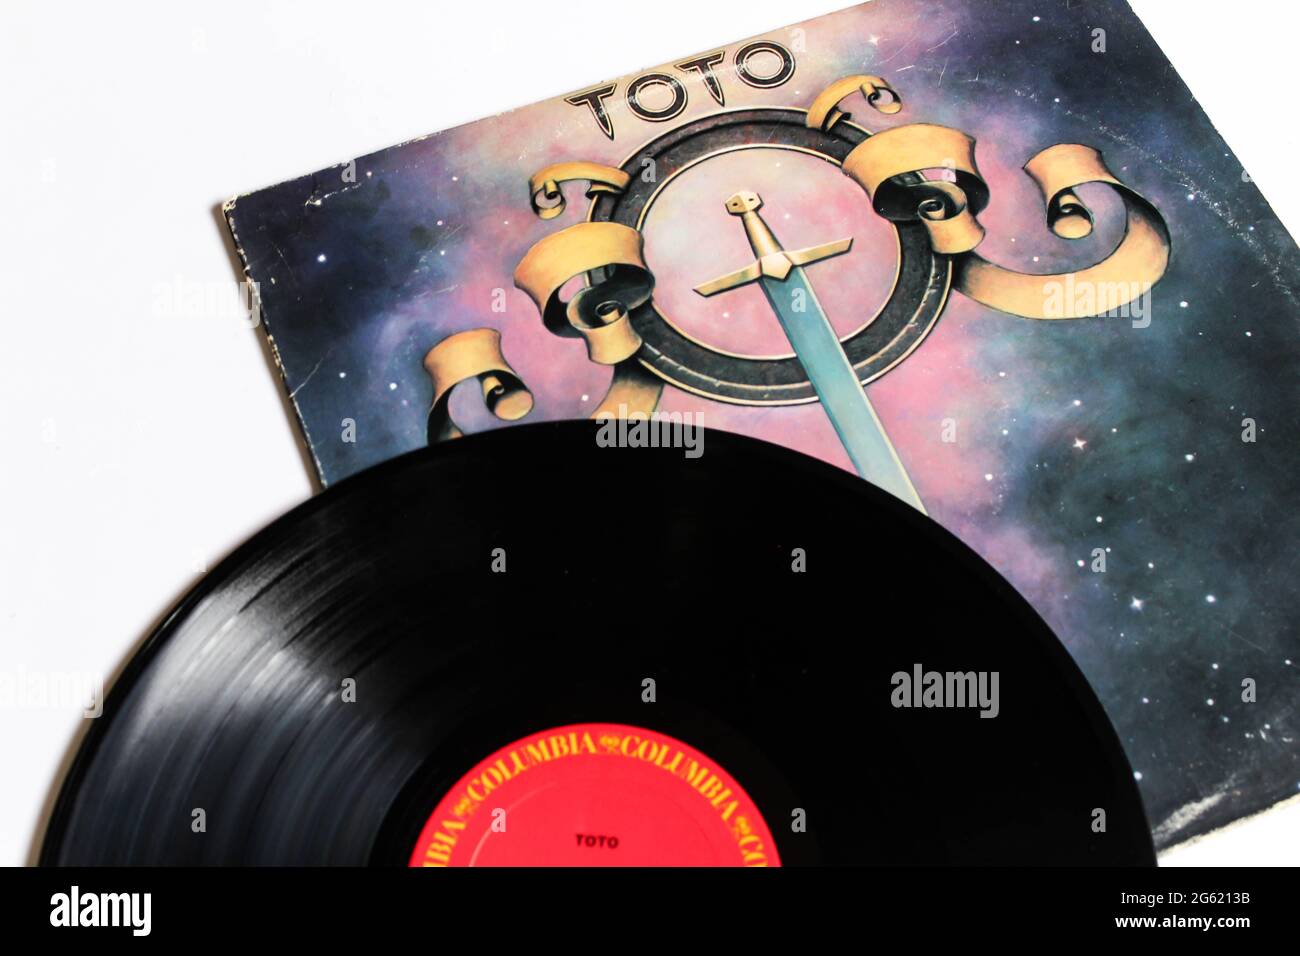 Banda clásica de rock progresivo, Toto, álbum de música en disco LP de  vinilo. Álbum con título propio. Portada del álbum Fotografía de stock -  Alamy